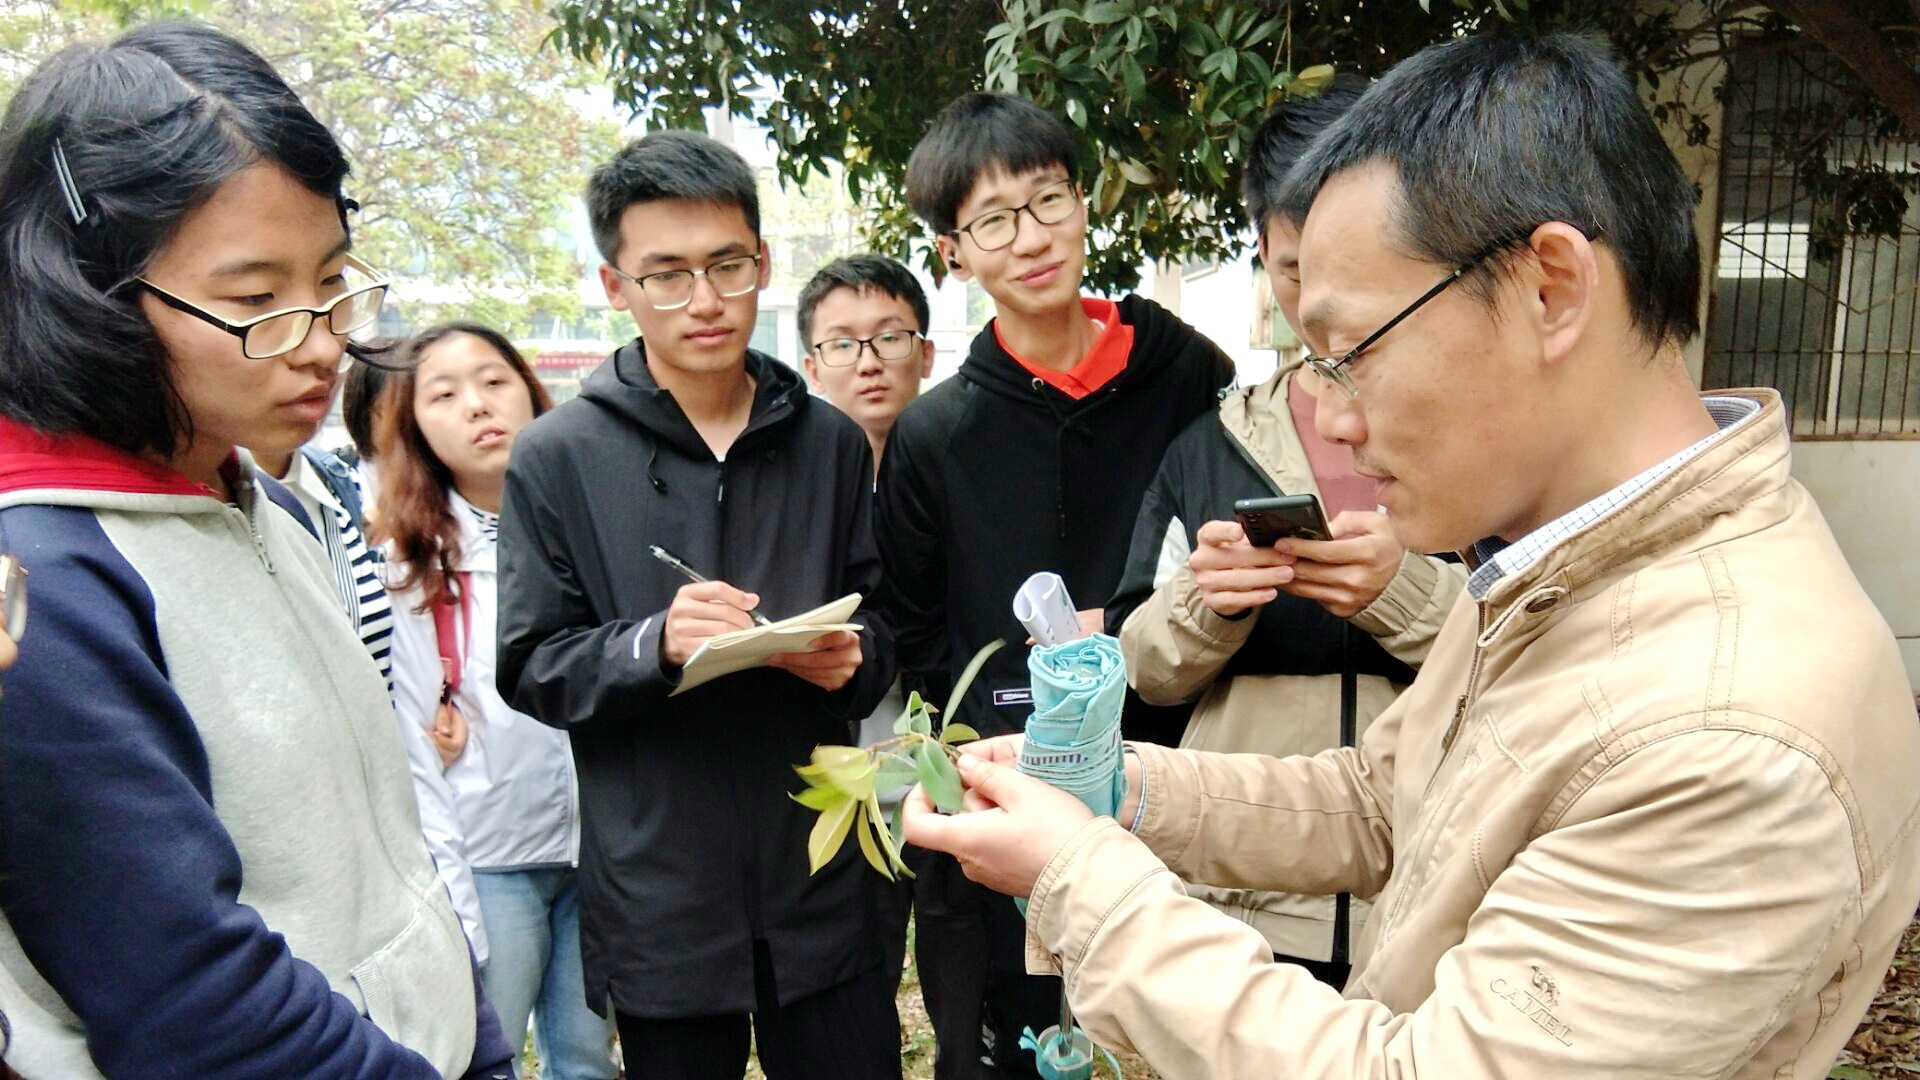 李刚老师在校园里带领同学们认识植物